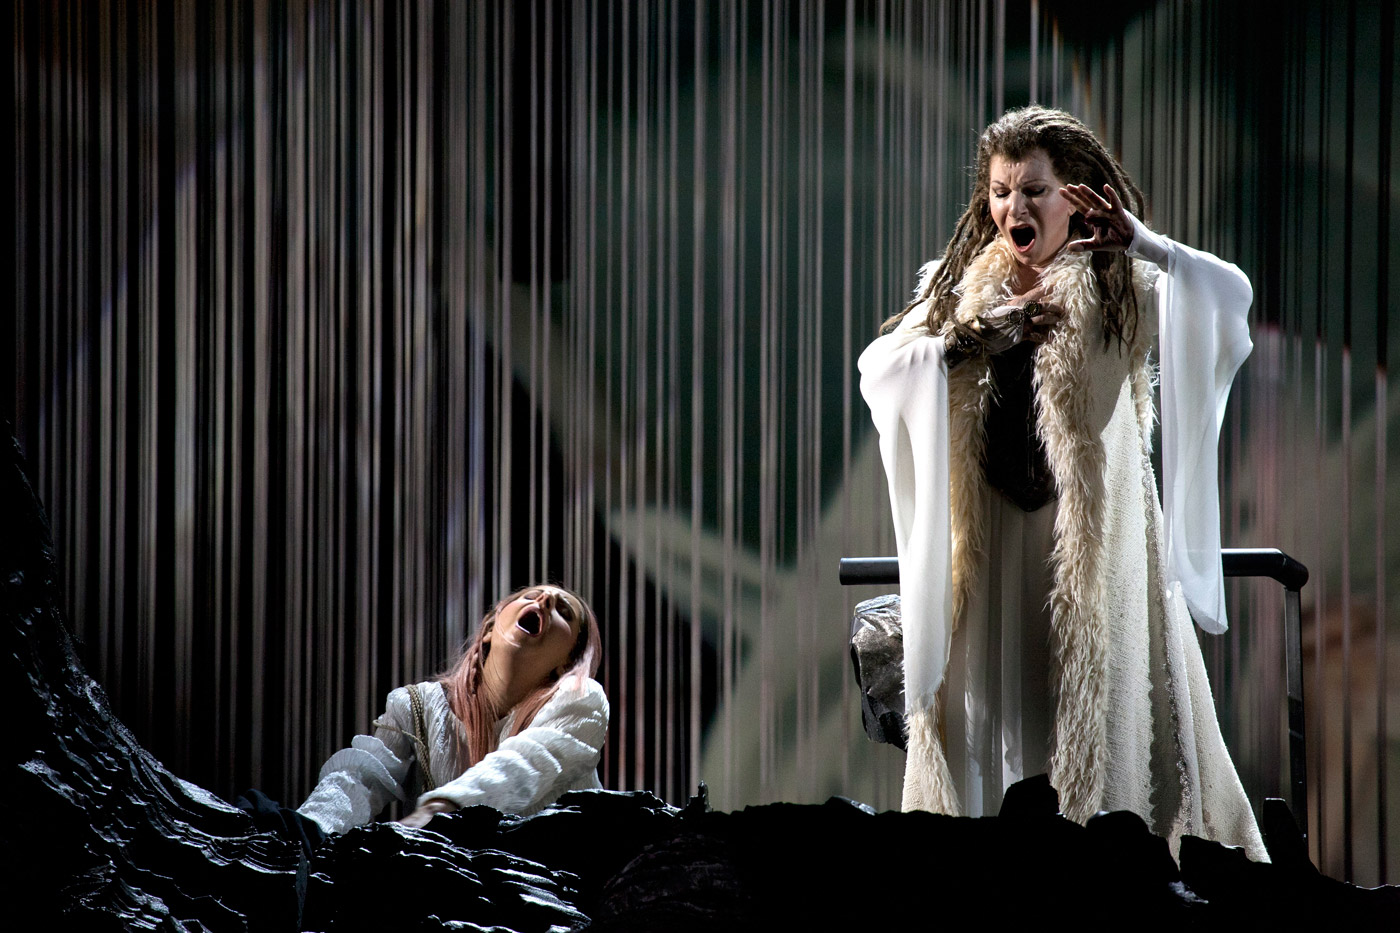 Foto del ensayo general de Norma con la puesta en escena de Davide Livermore en el Palau de les Arts en coproduccion con Teatro Real